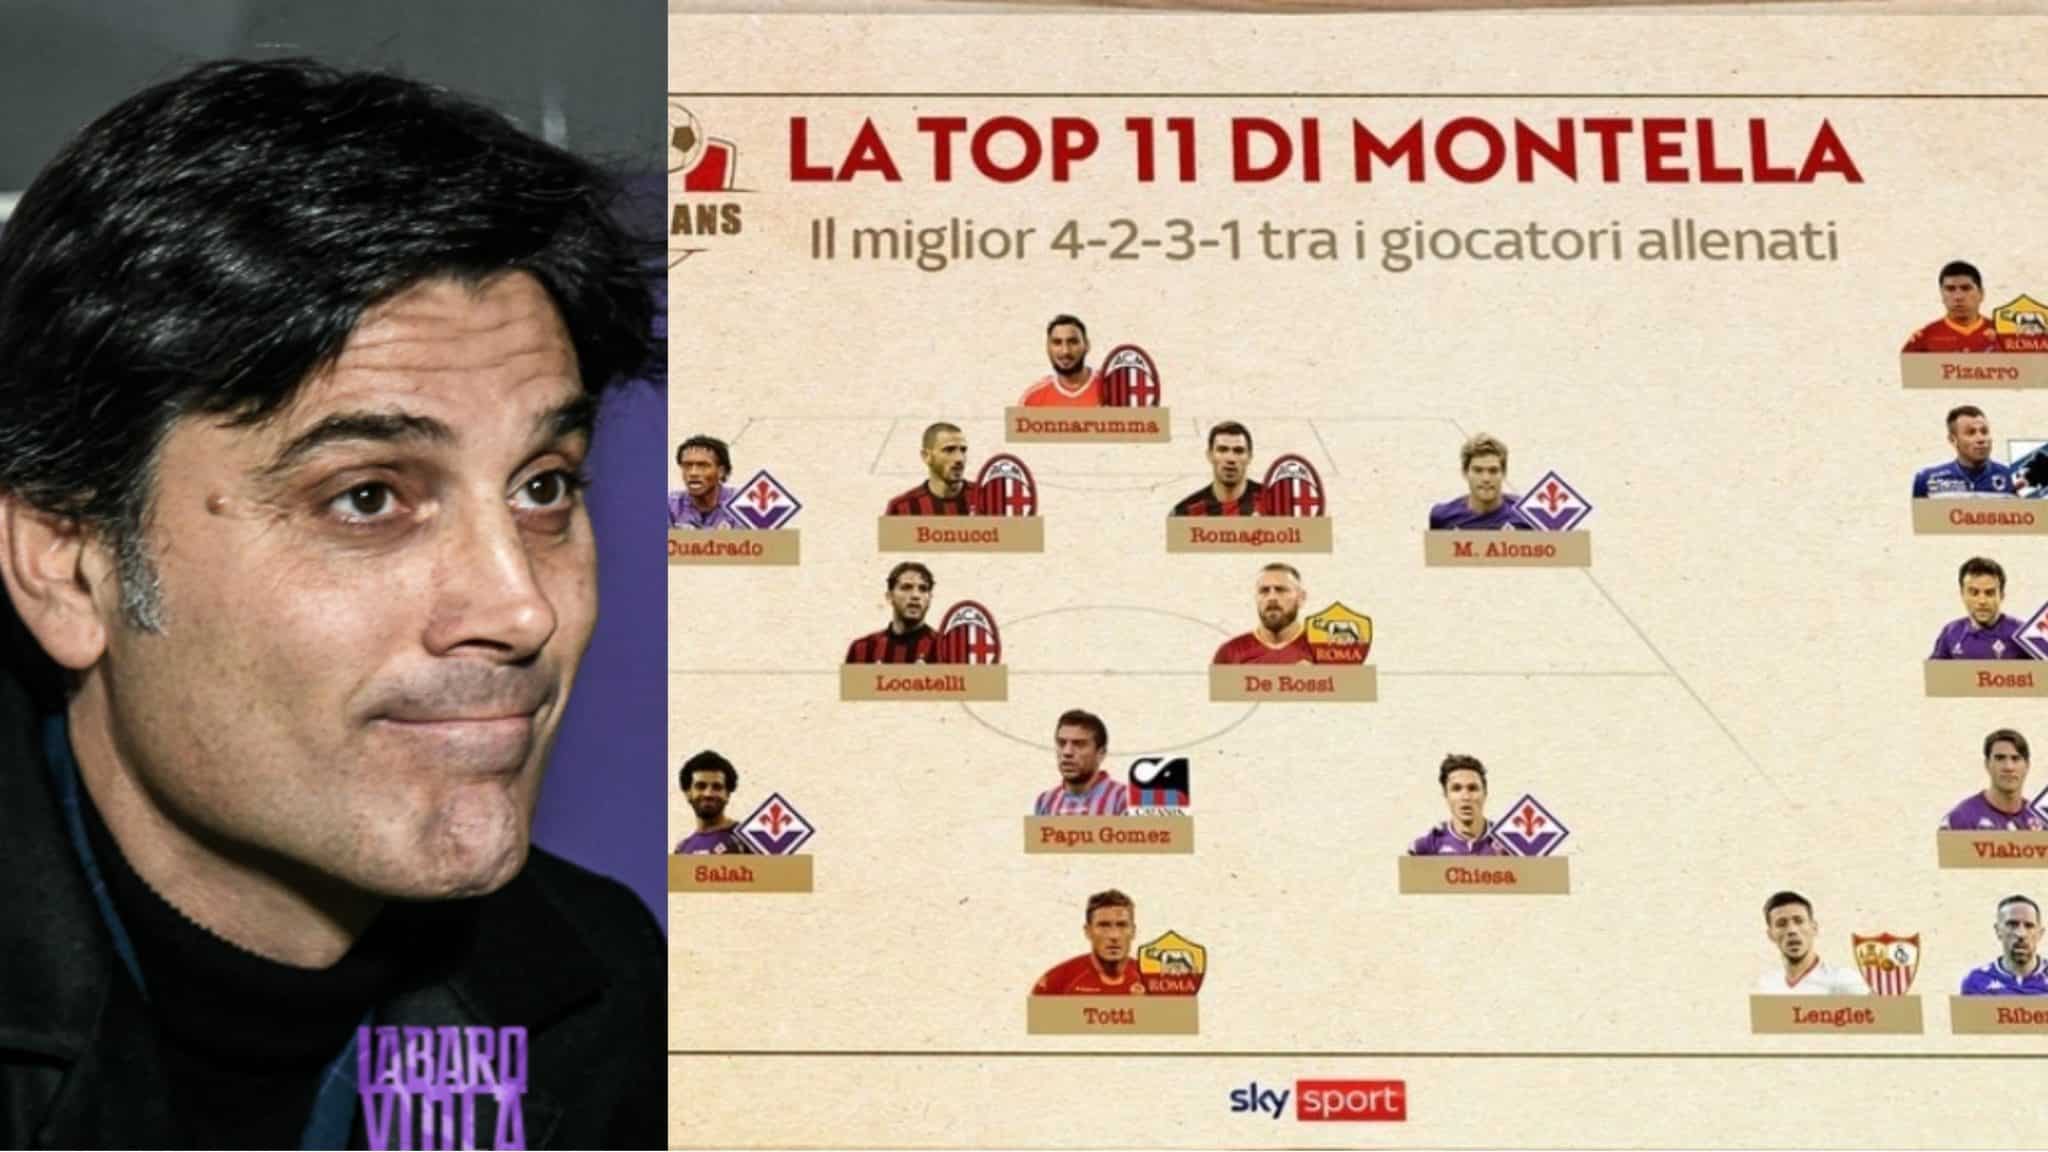 Montella écrit son top 11 des joueurs entraînés, de Borja Valero pour Locatelli, de la Fiorentina en 4